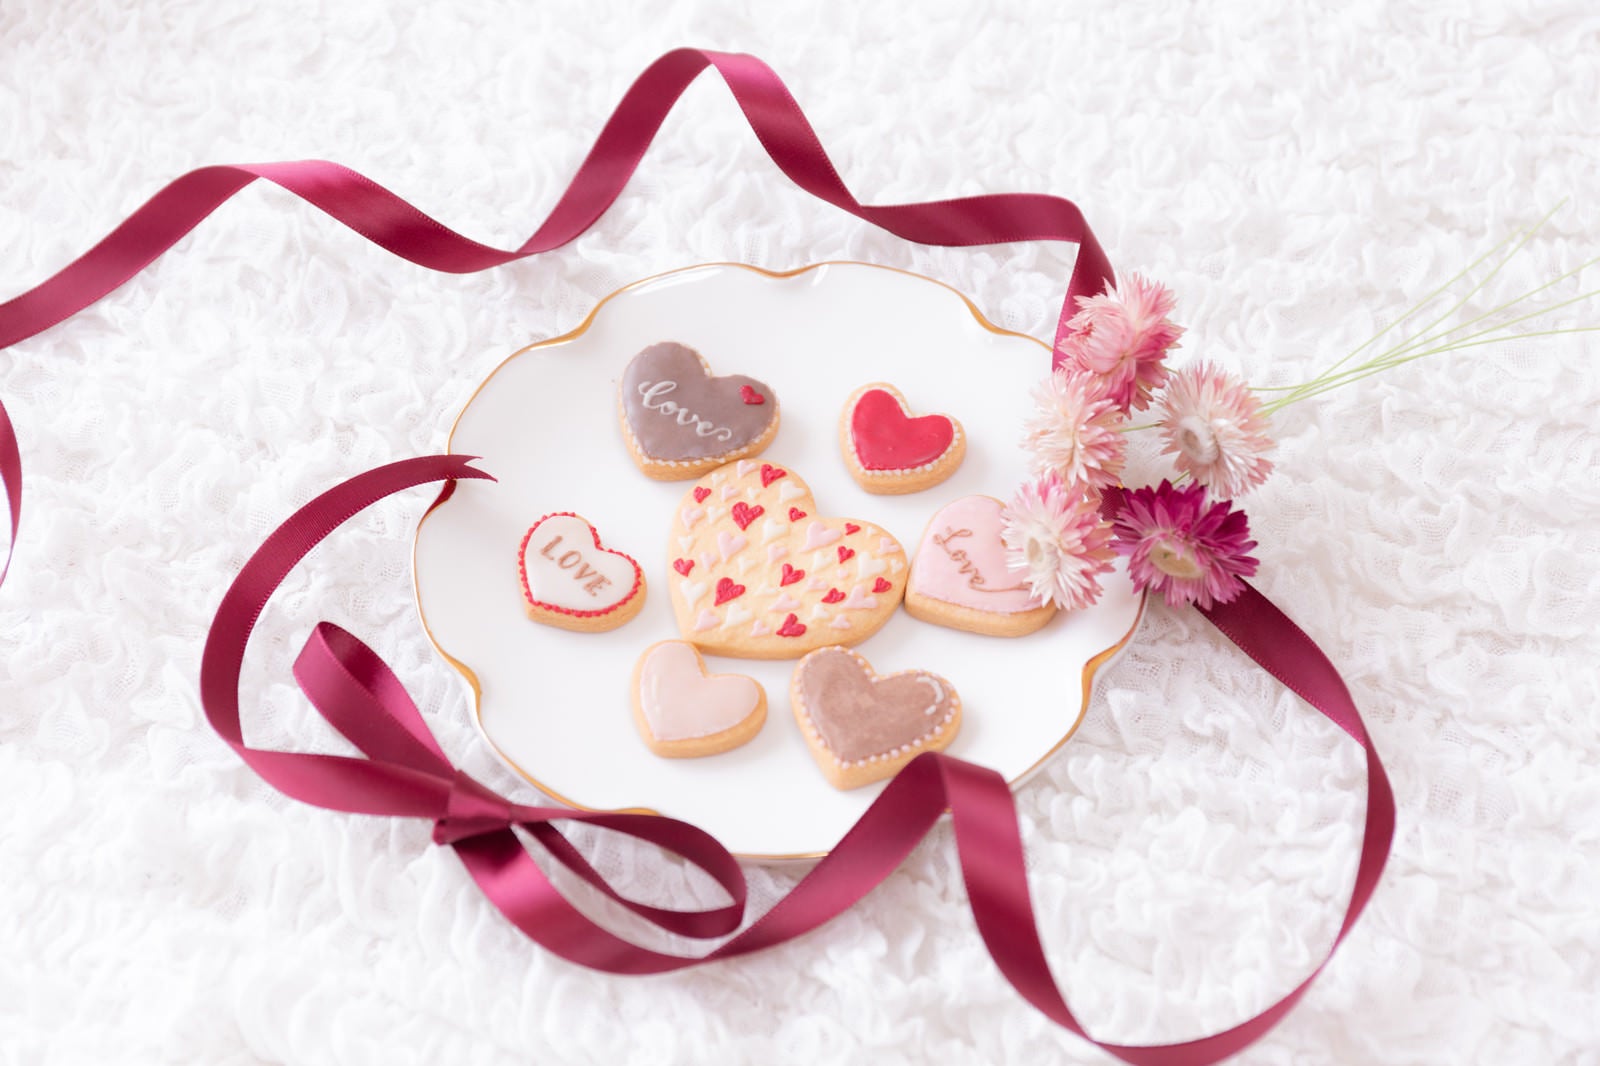 「花を添えて並べたバレンタインクッキー」の写真